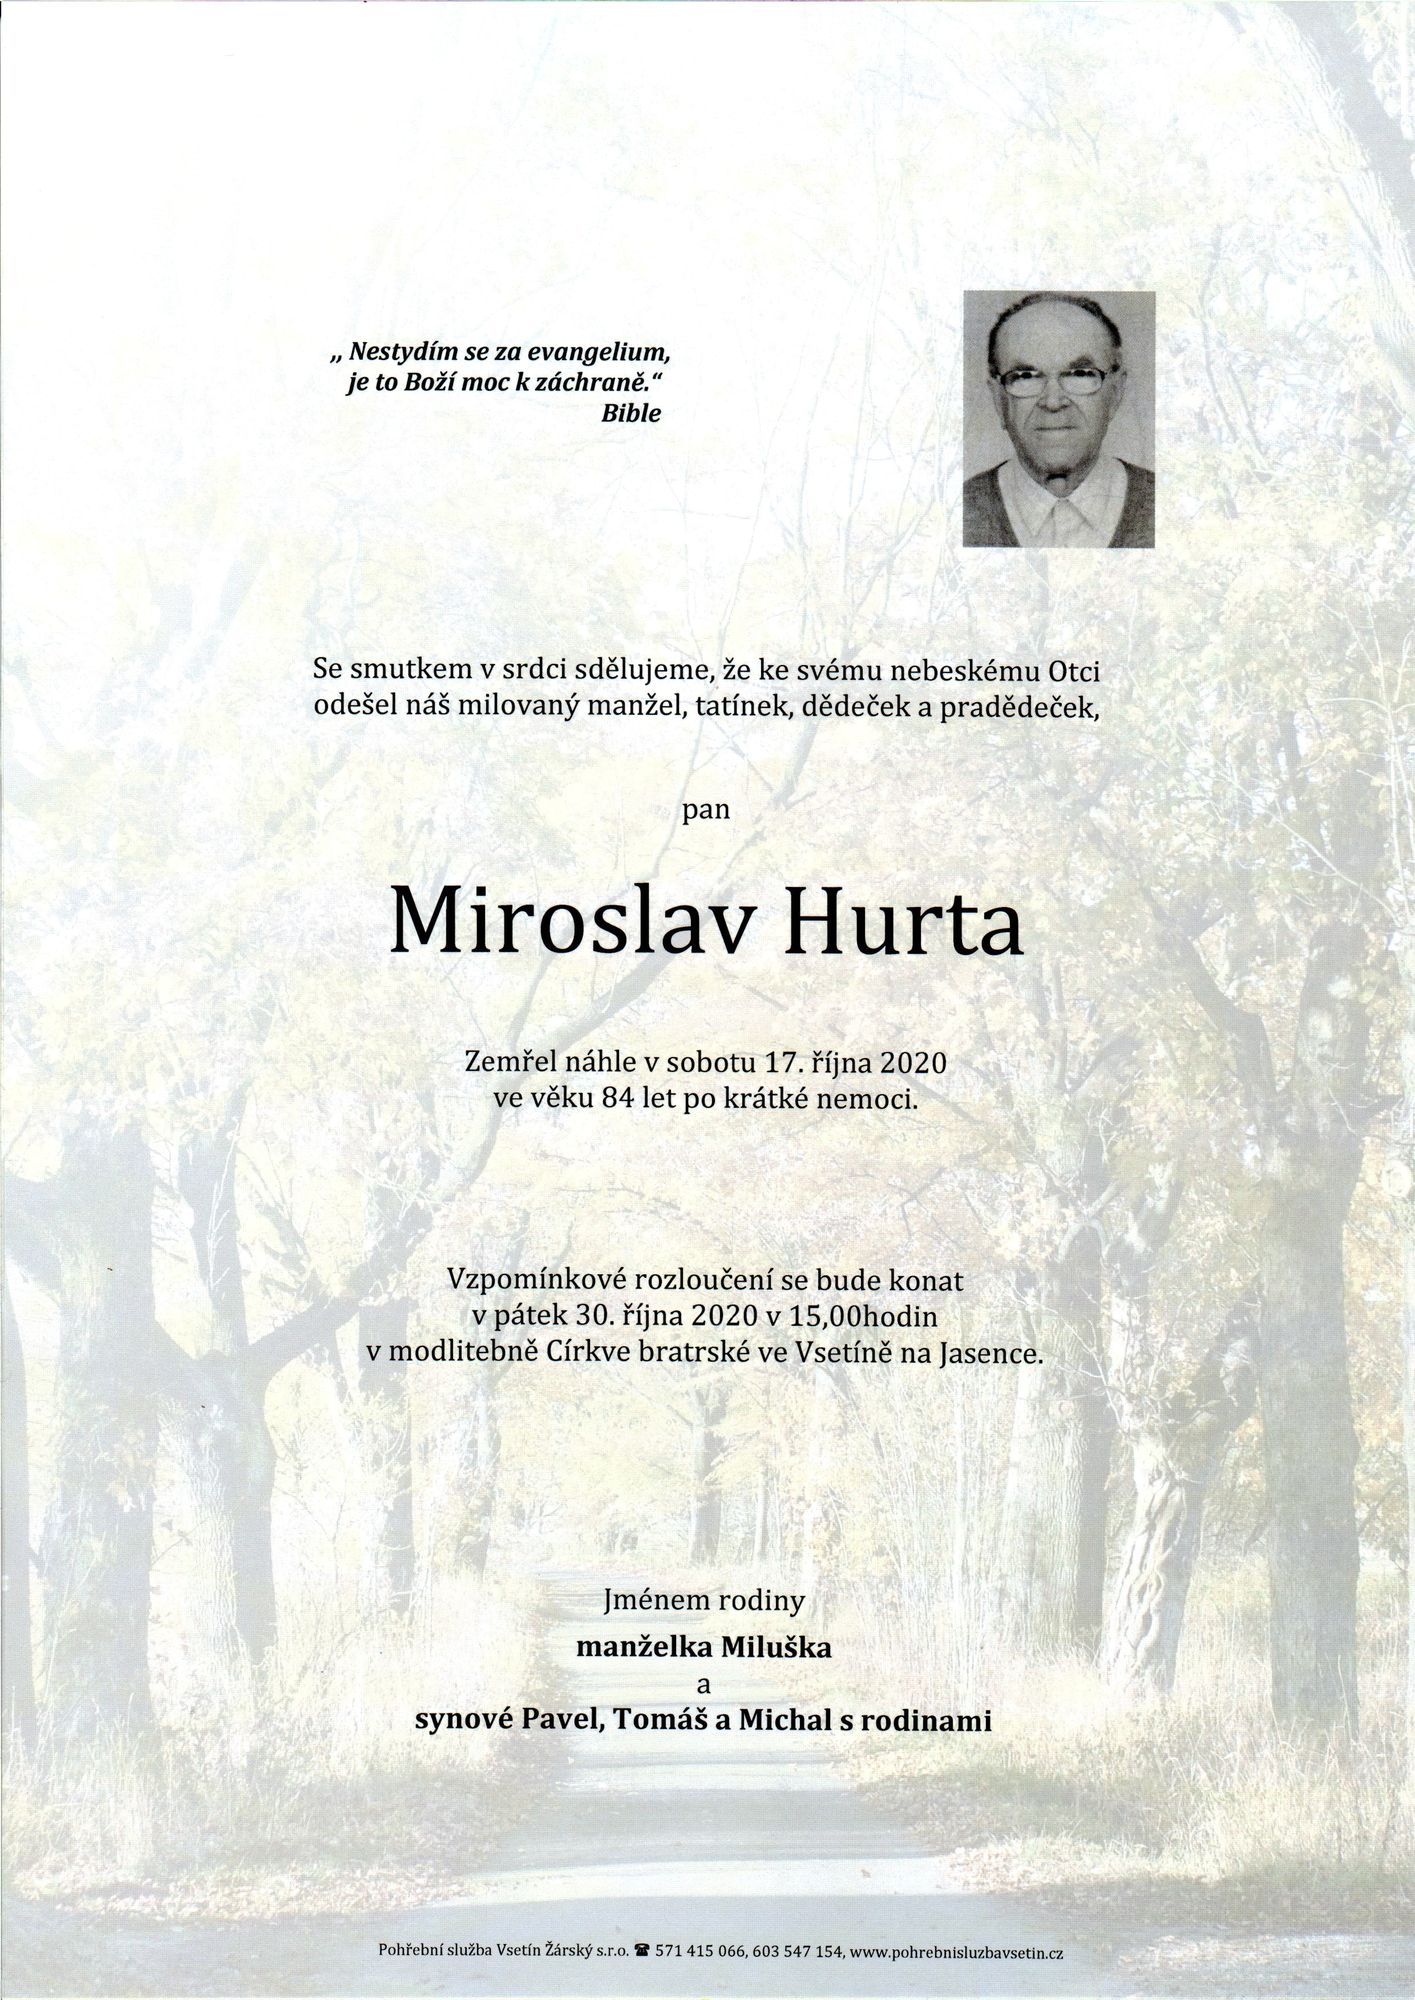 Miroslav Hurta